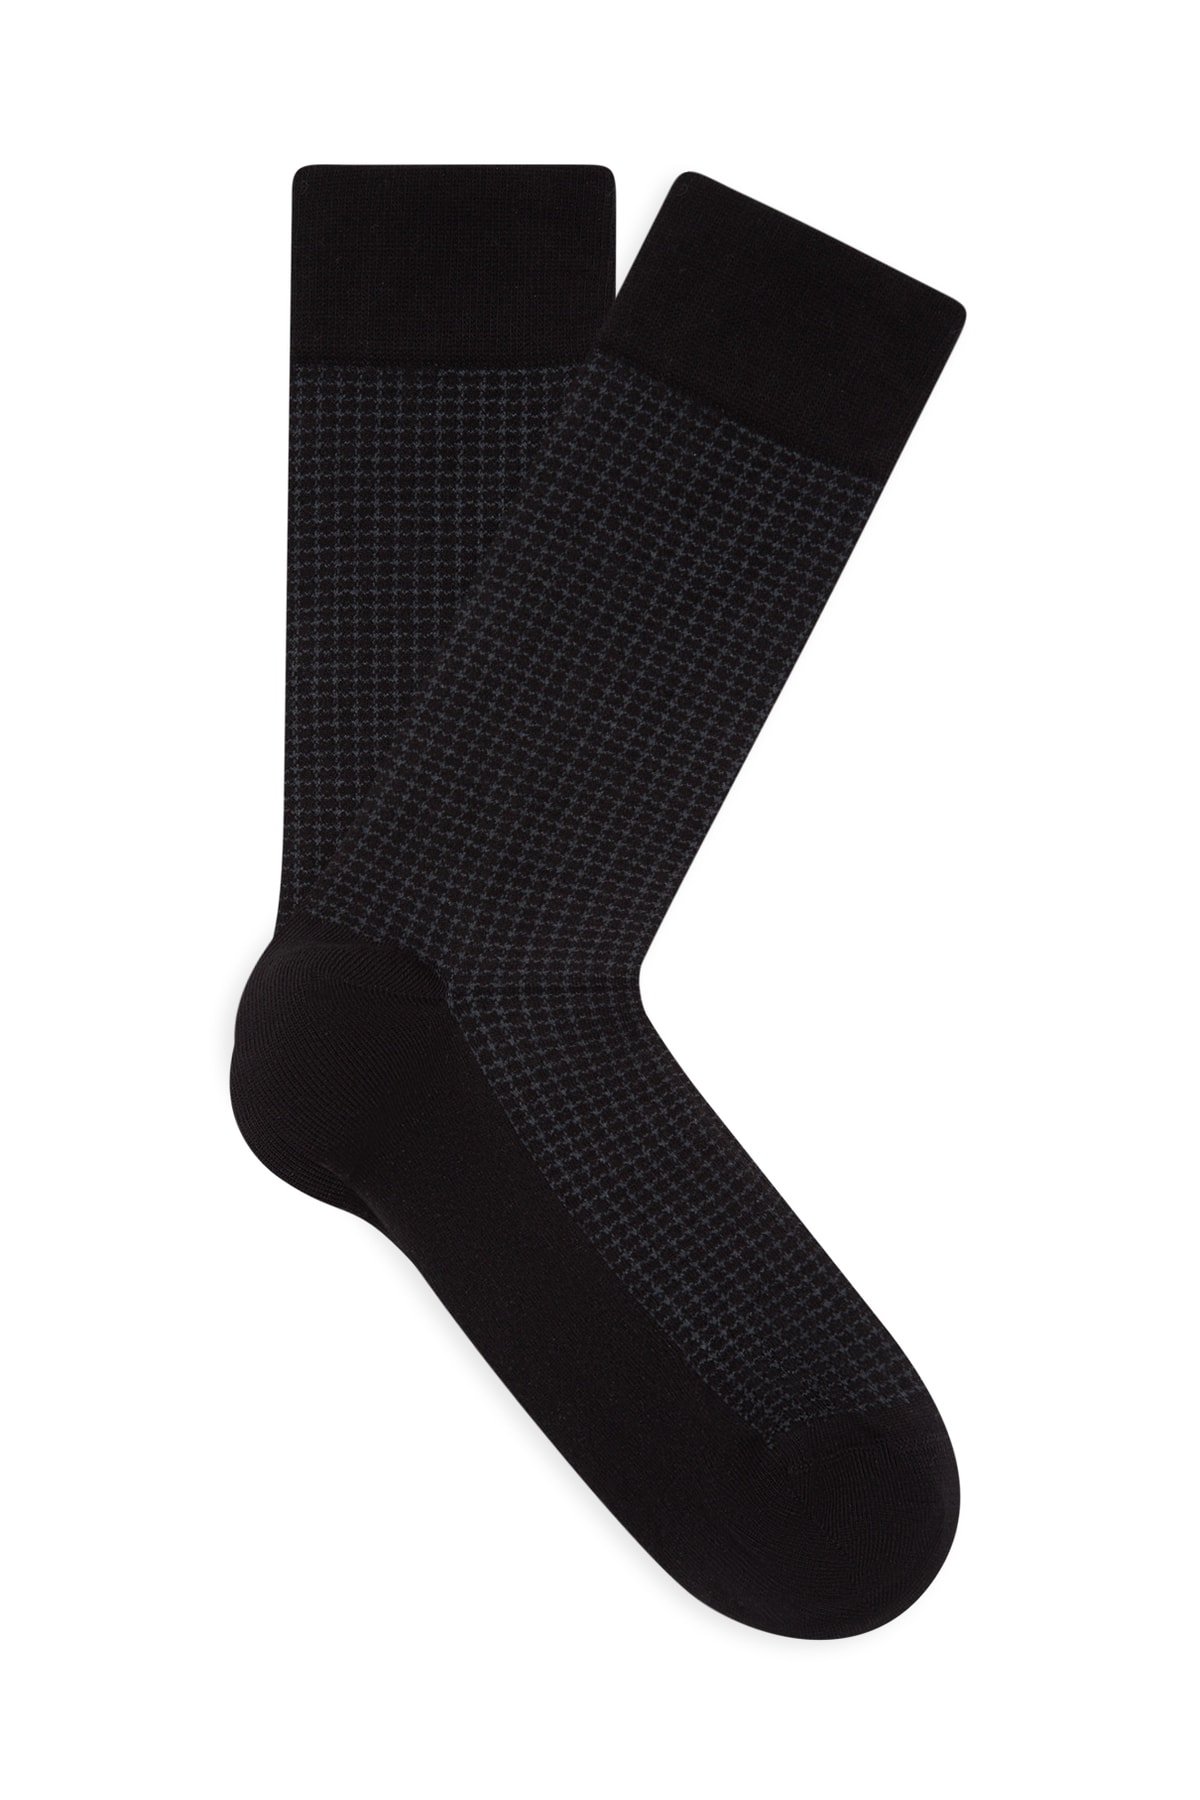 Mavi Baskılı Siyah Soket Çorap 092721-900